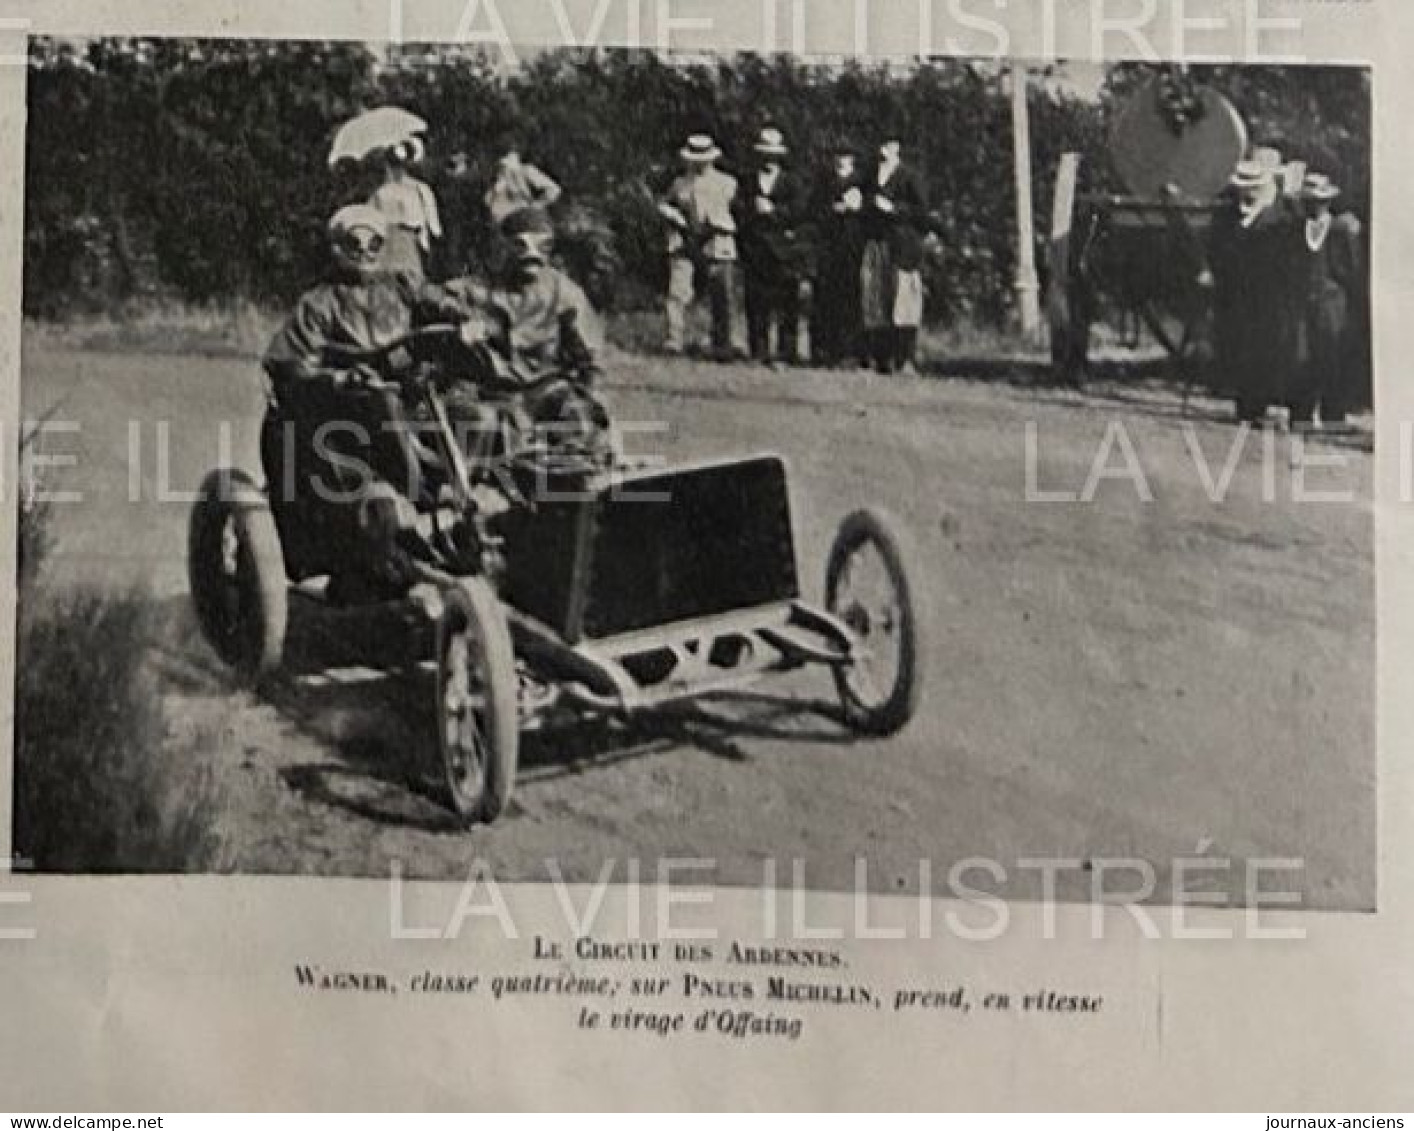 1905 COURSE AUTOMOBILE - LE CIRCUIT DES ARDENNES - VAINQUEUR HÉMERY SUR DARRACQ - TART - WAGNER - LE BLON - 1900 - 1949